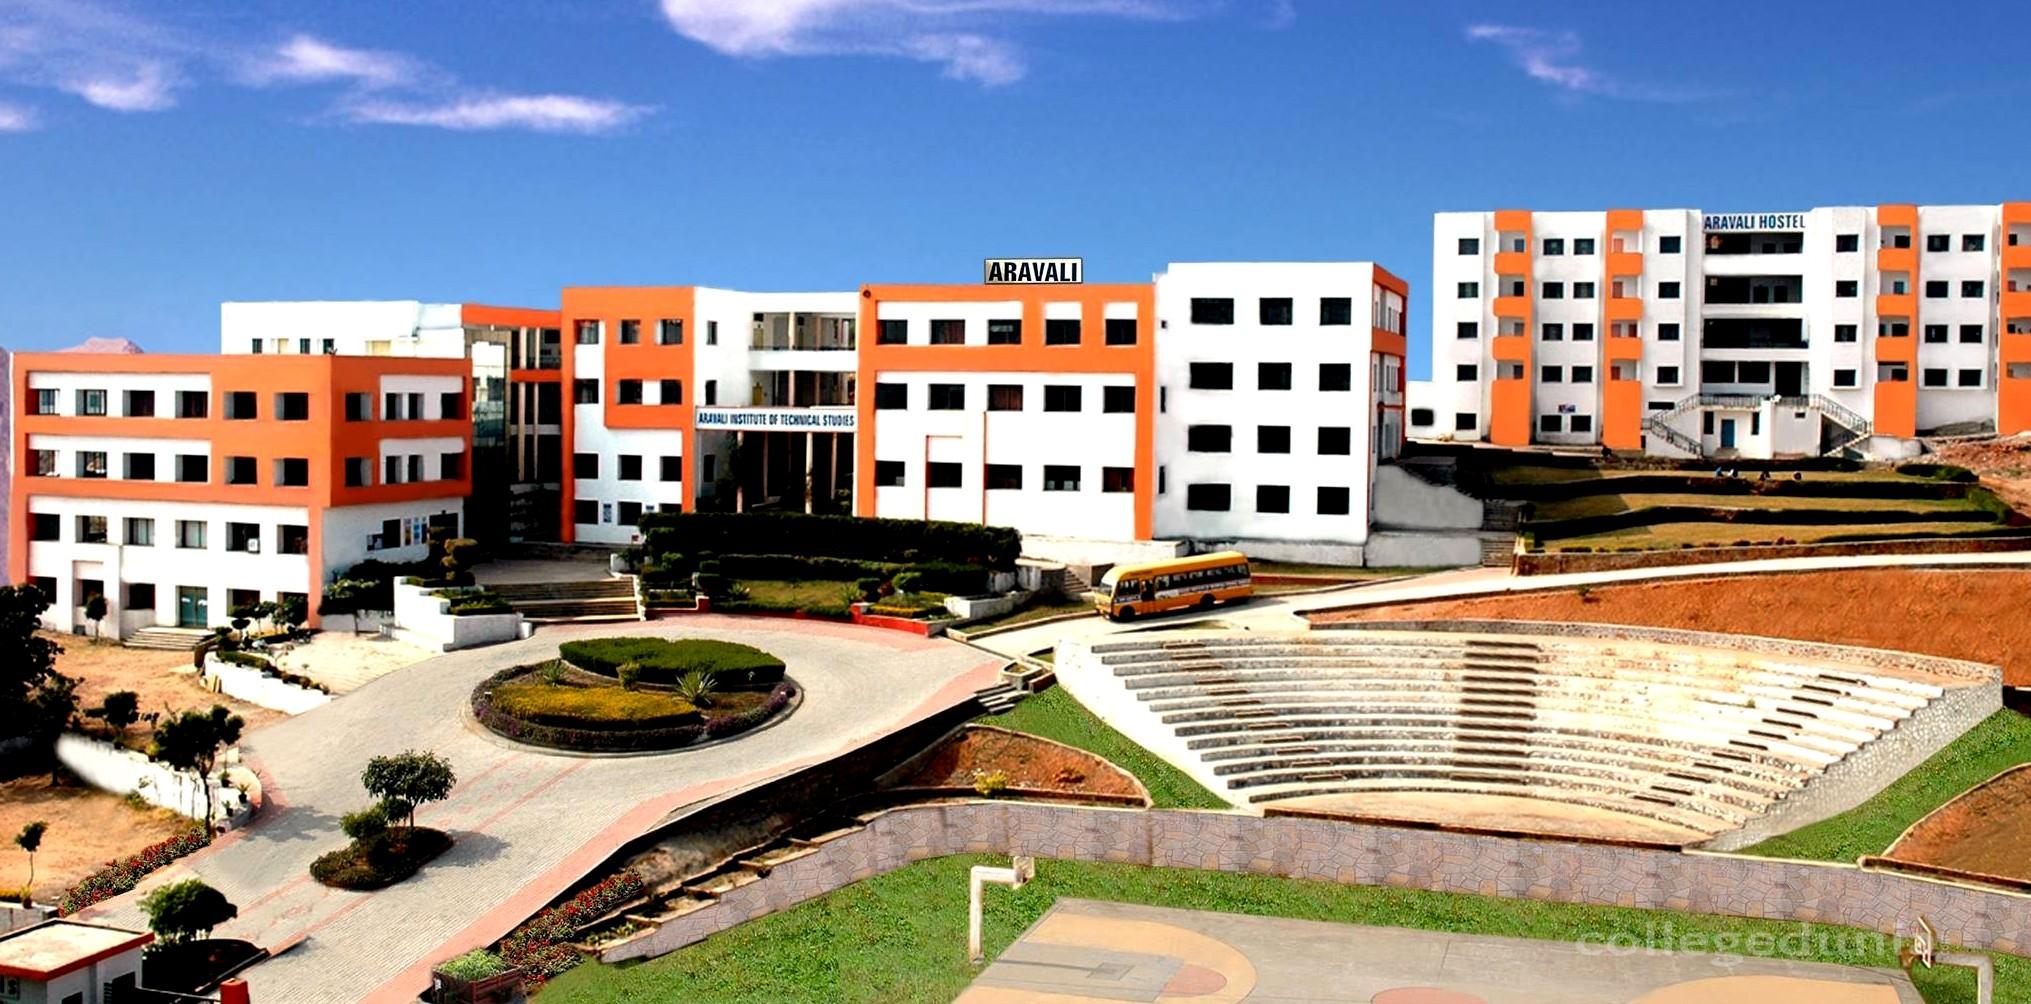 Aravali Institute of Technical Studies, Udaipur Image